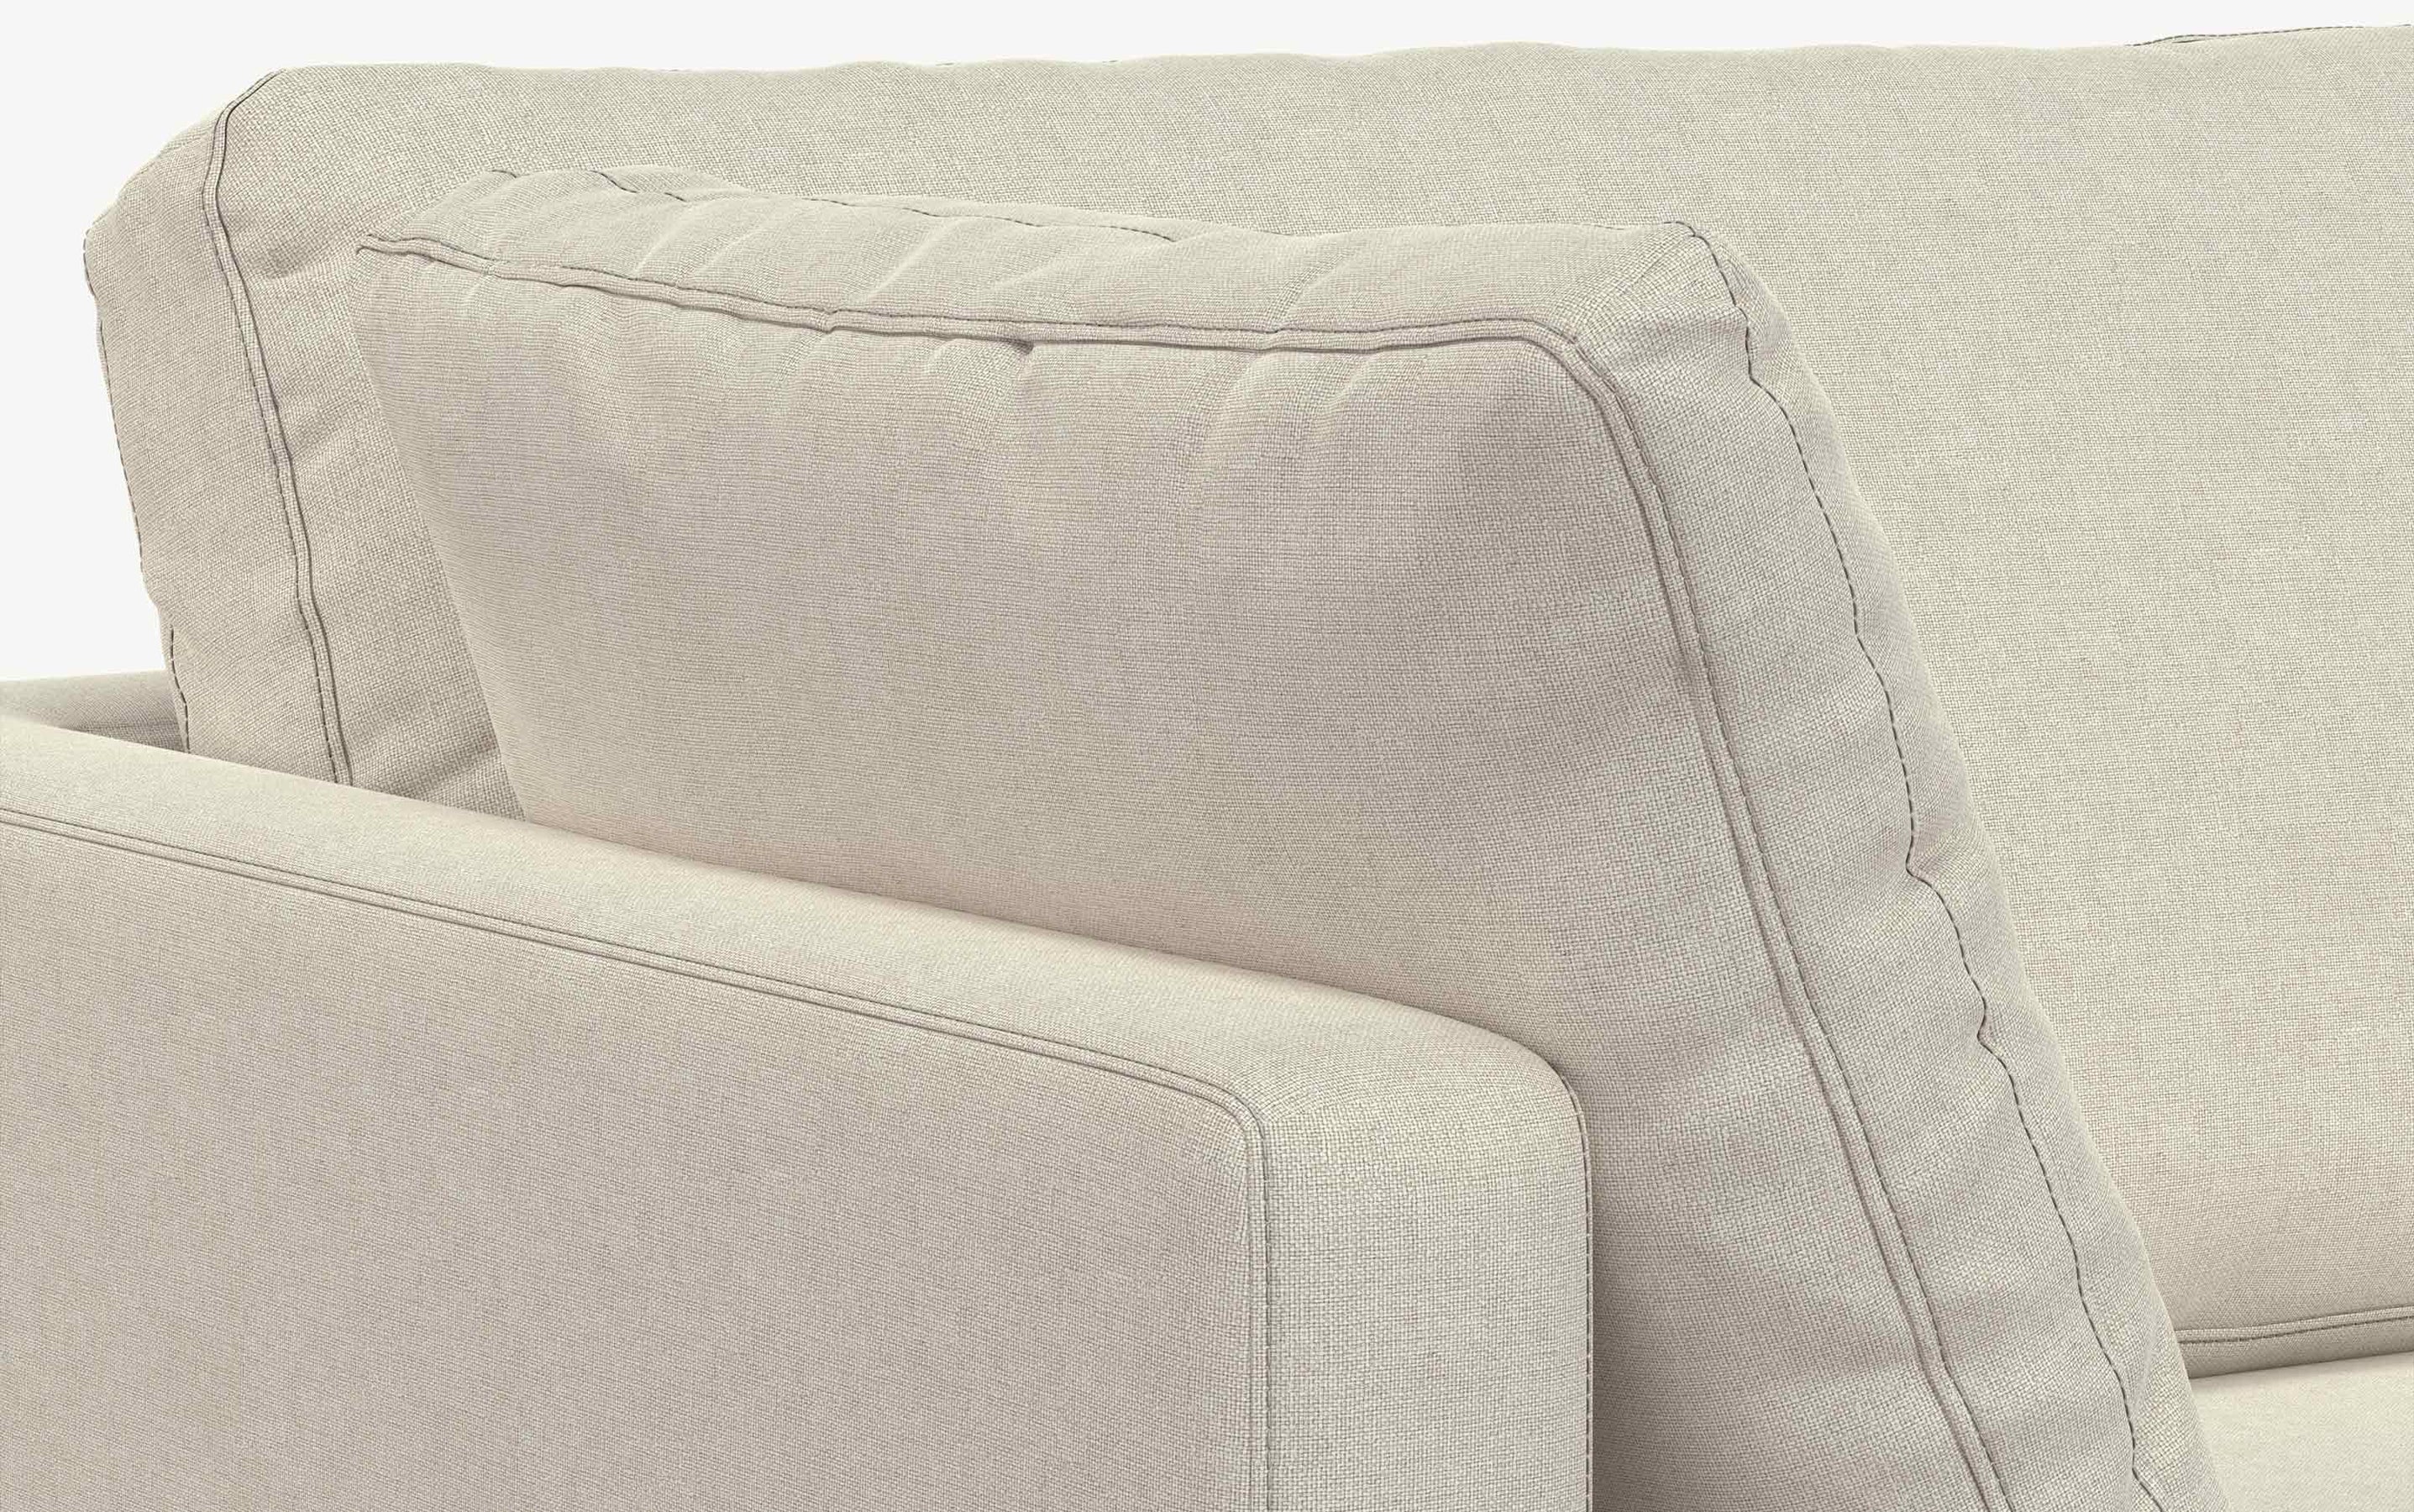 Cream | Ava 90 inch Mid Century Sofa